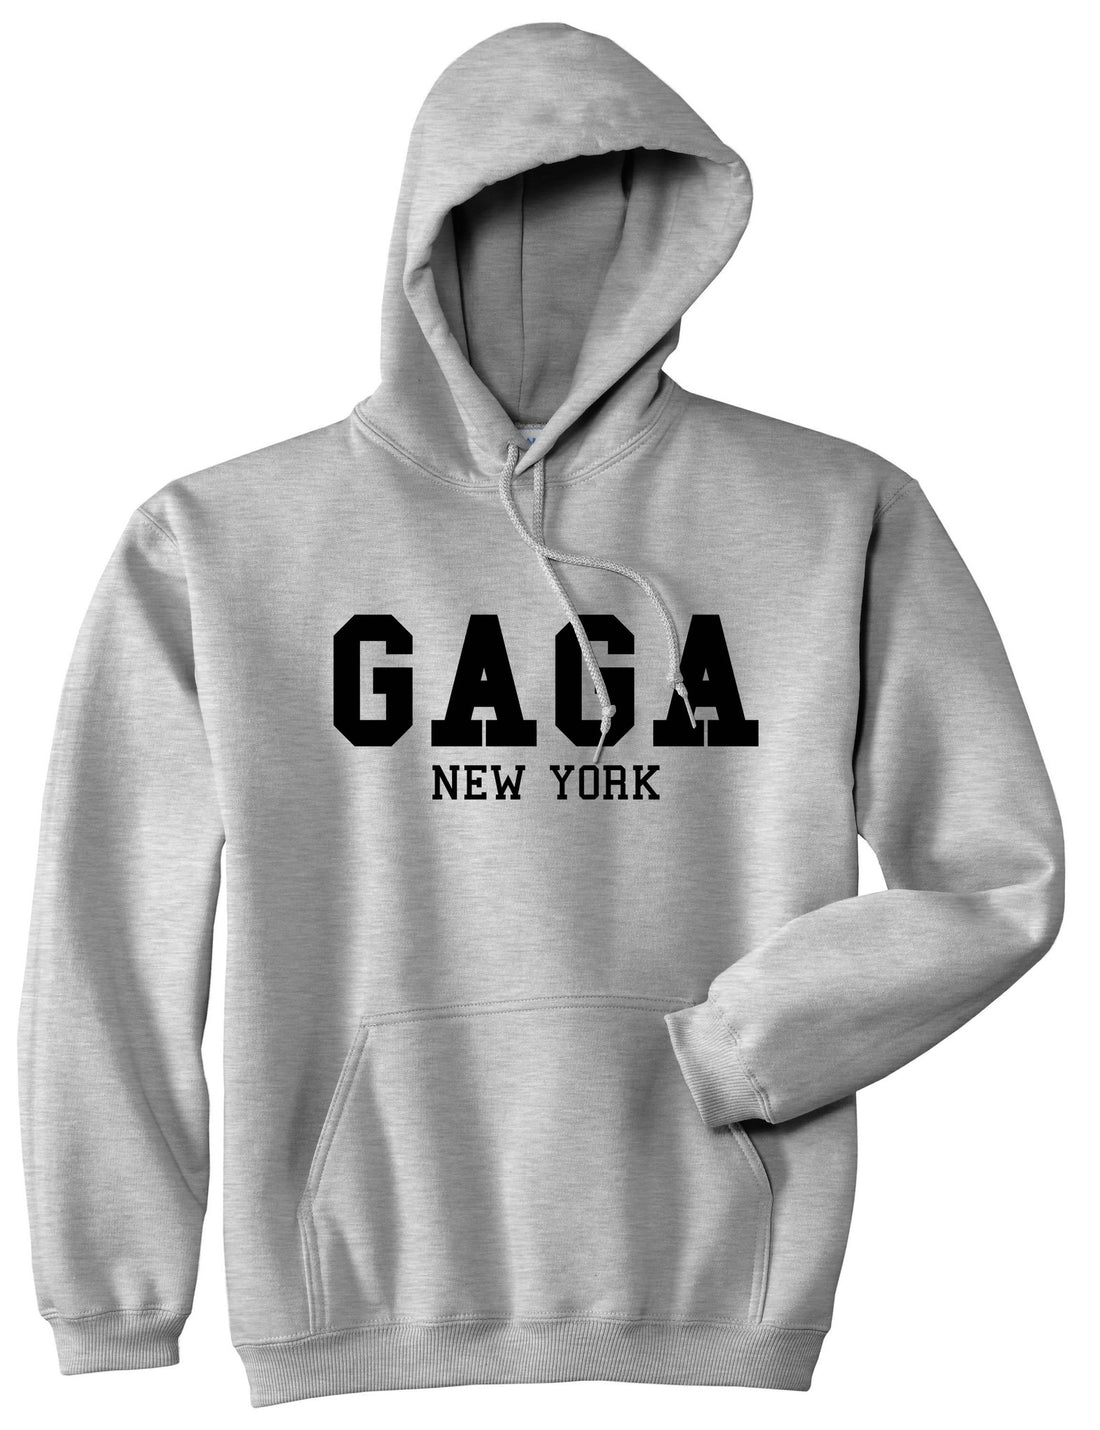 Gaga New York Pullover Hoodie Hoody in Grey by Kings Of NY